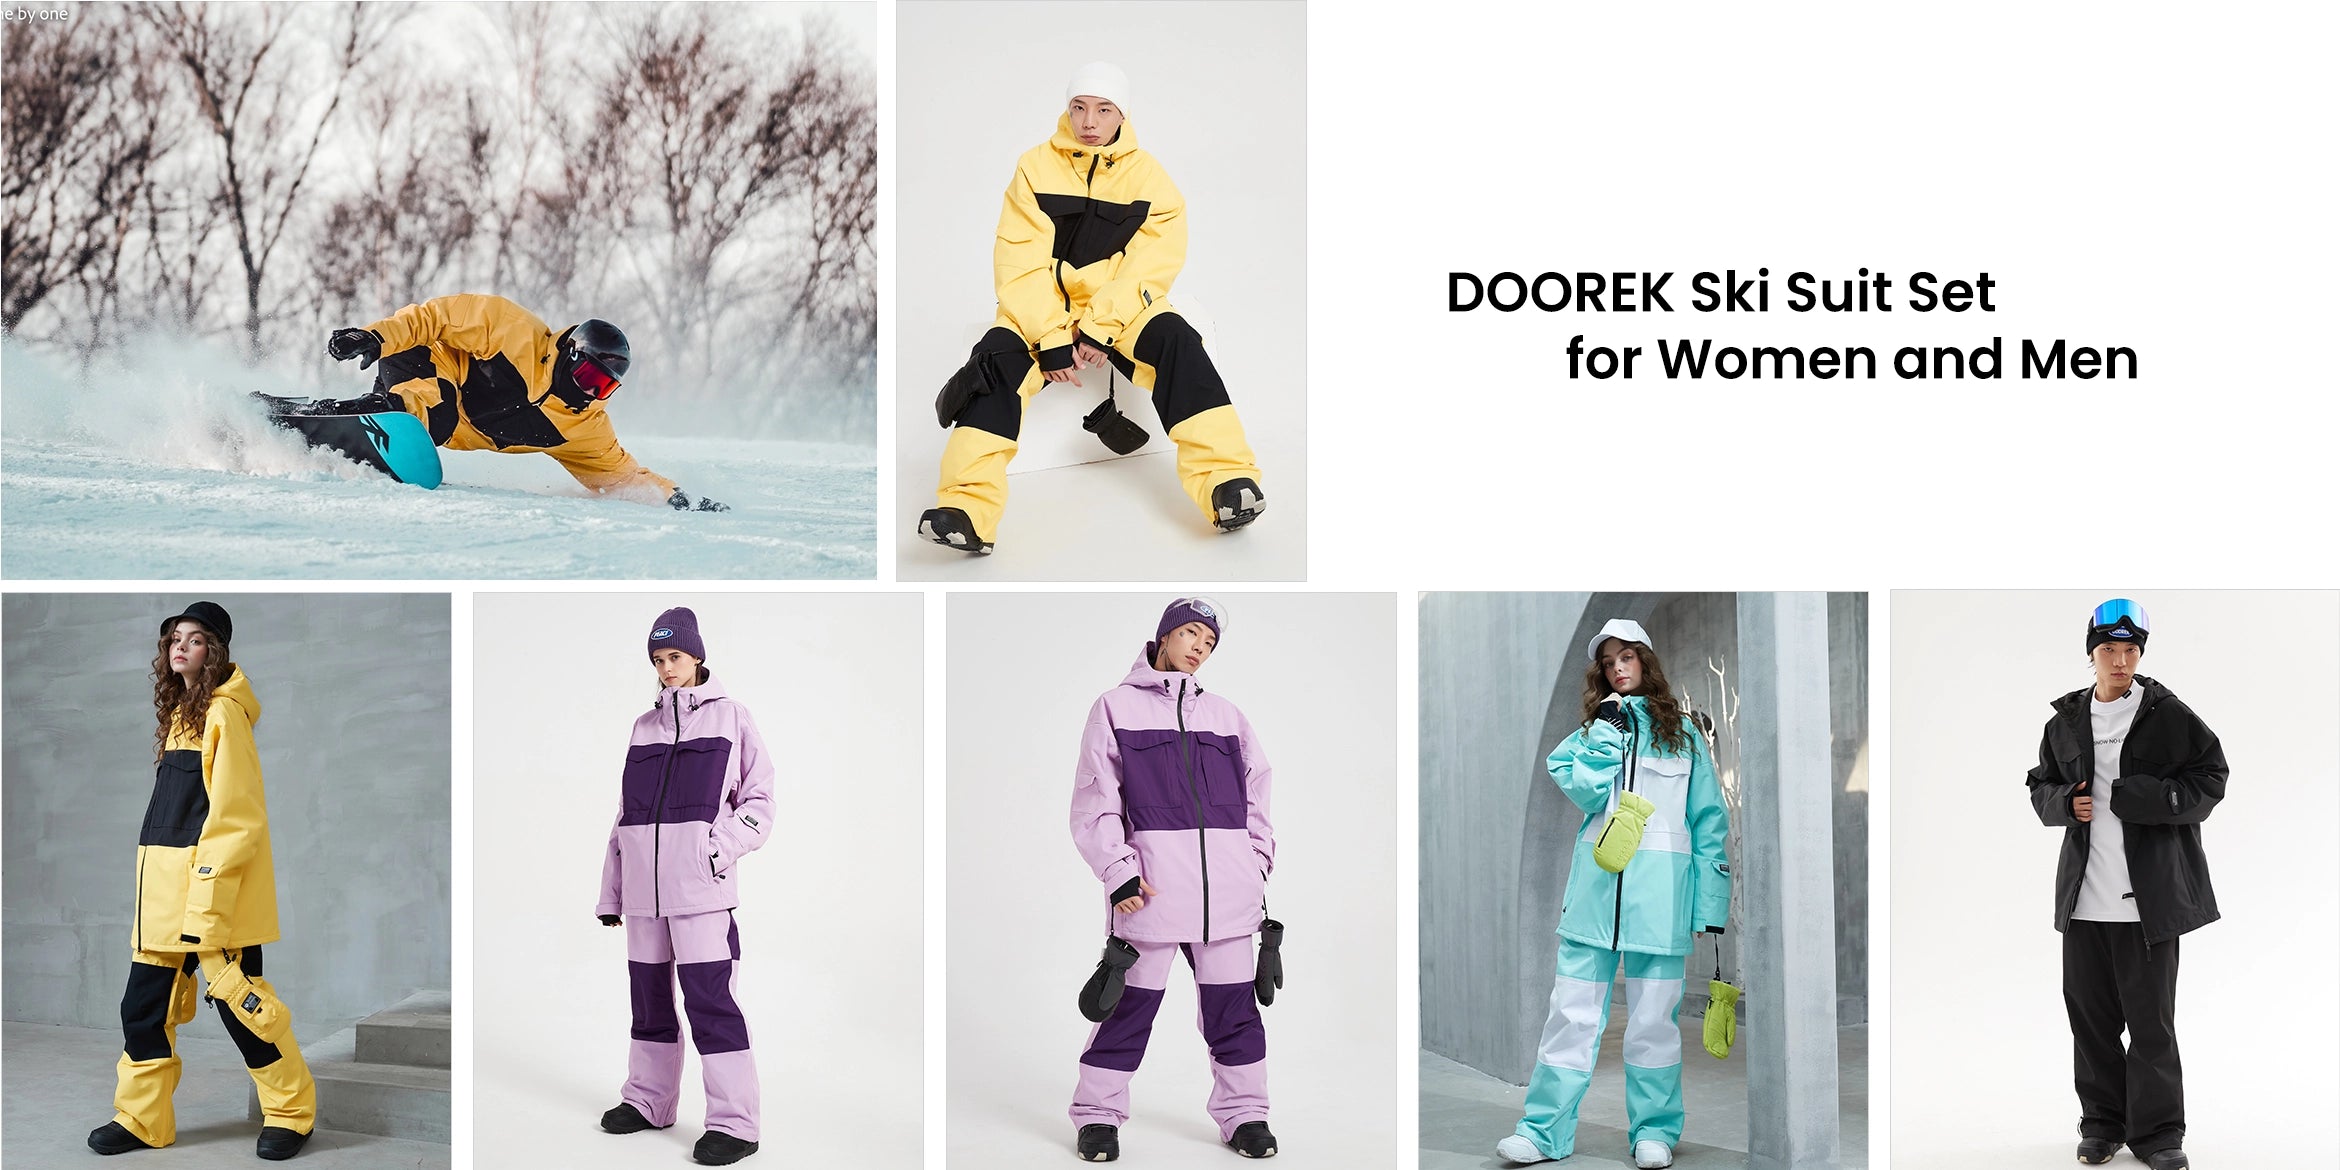 1. Doorek Ski Suit for Women and Men